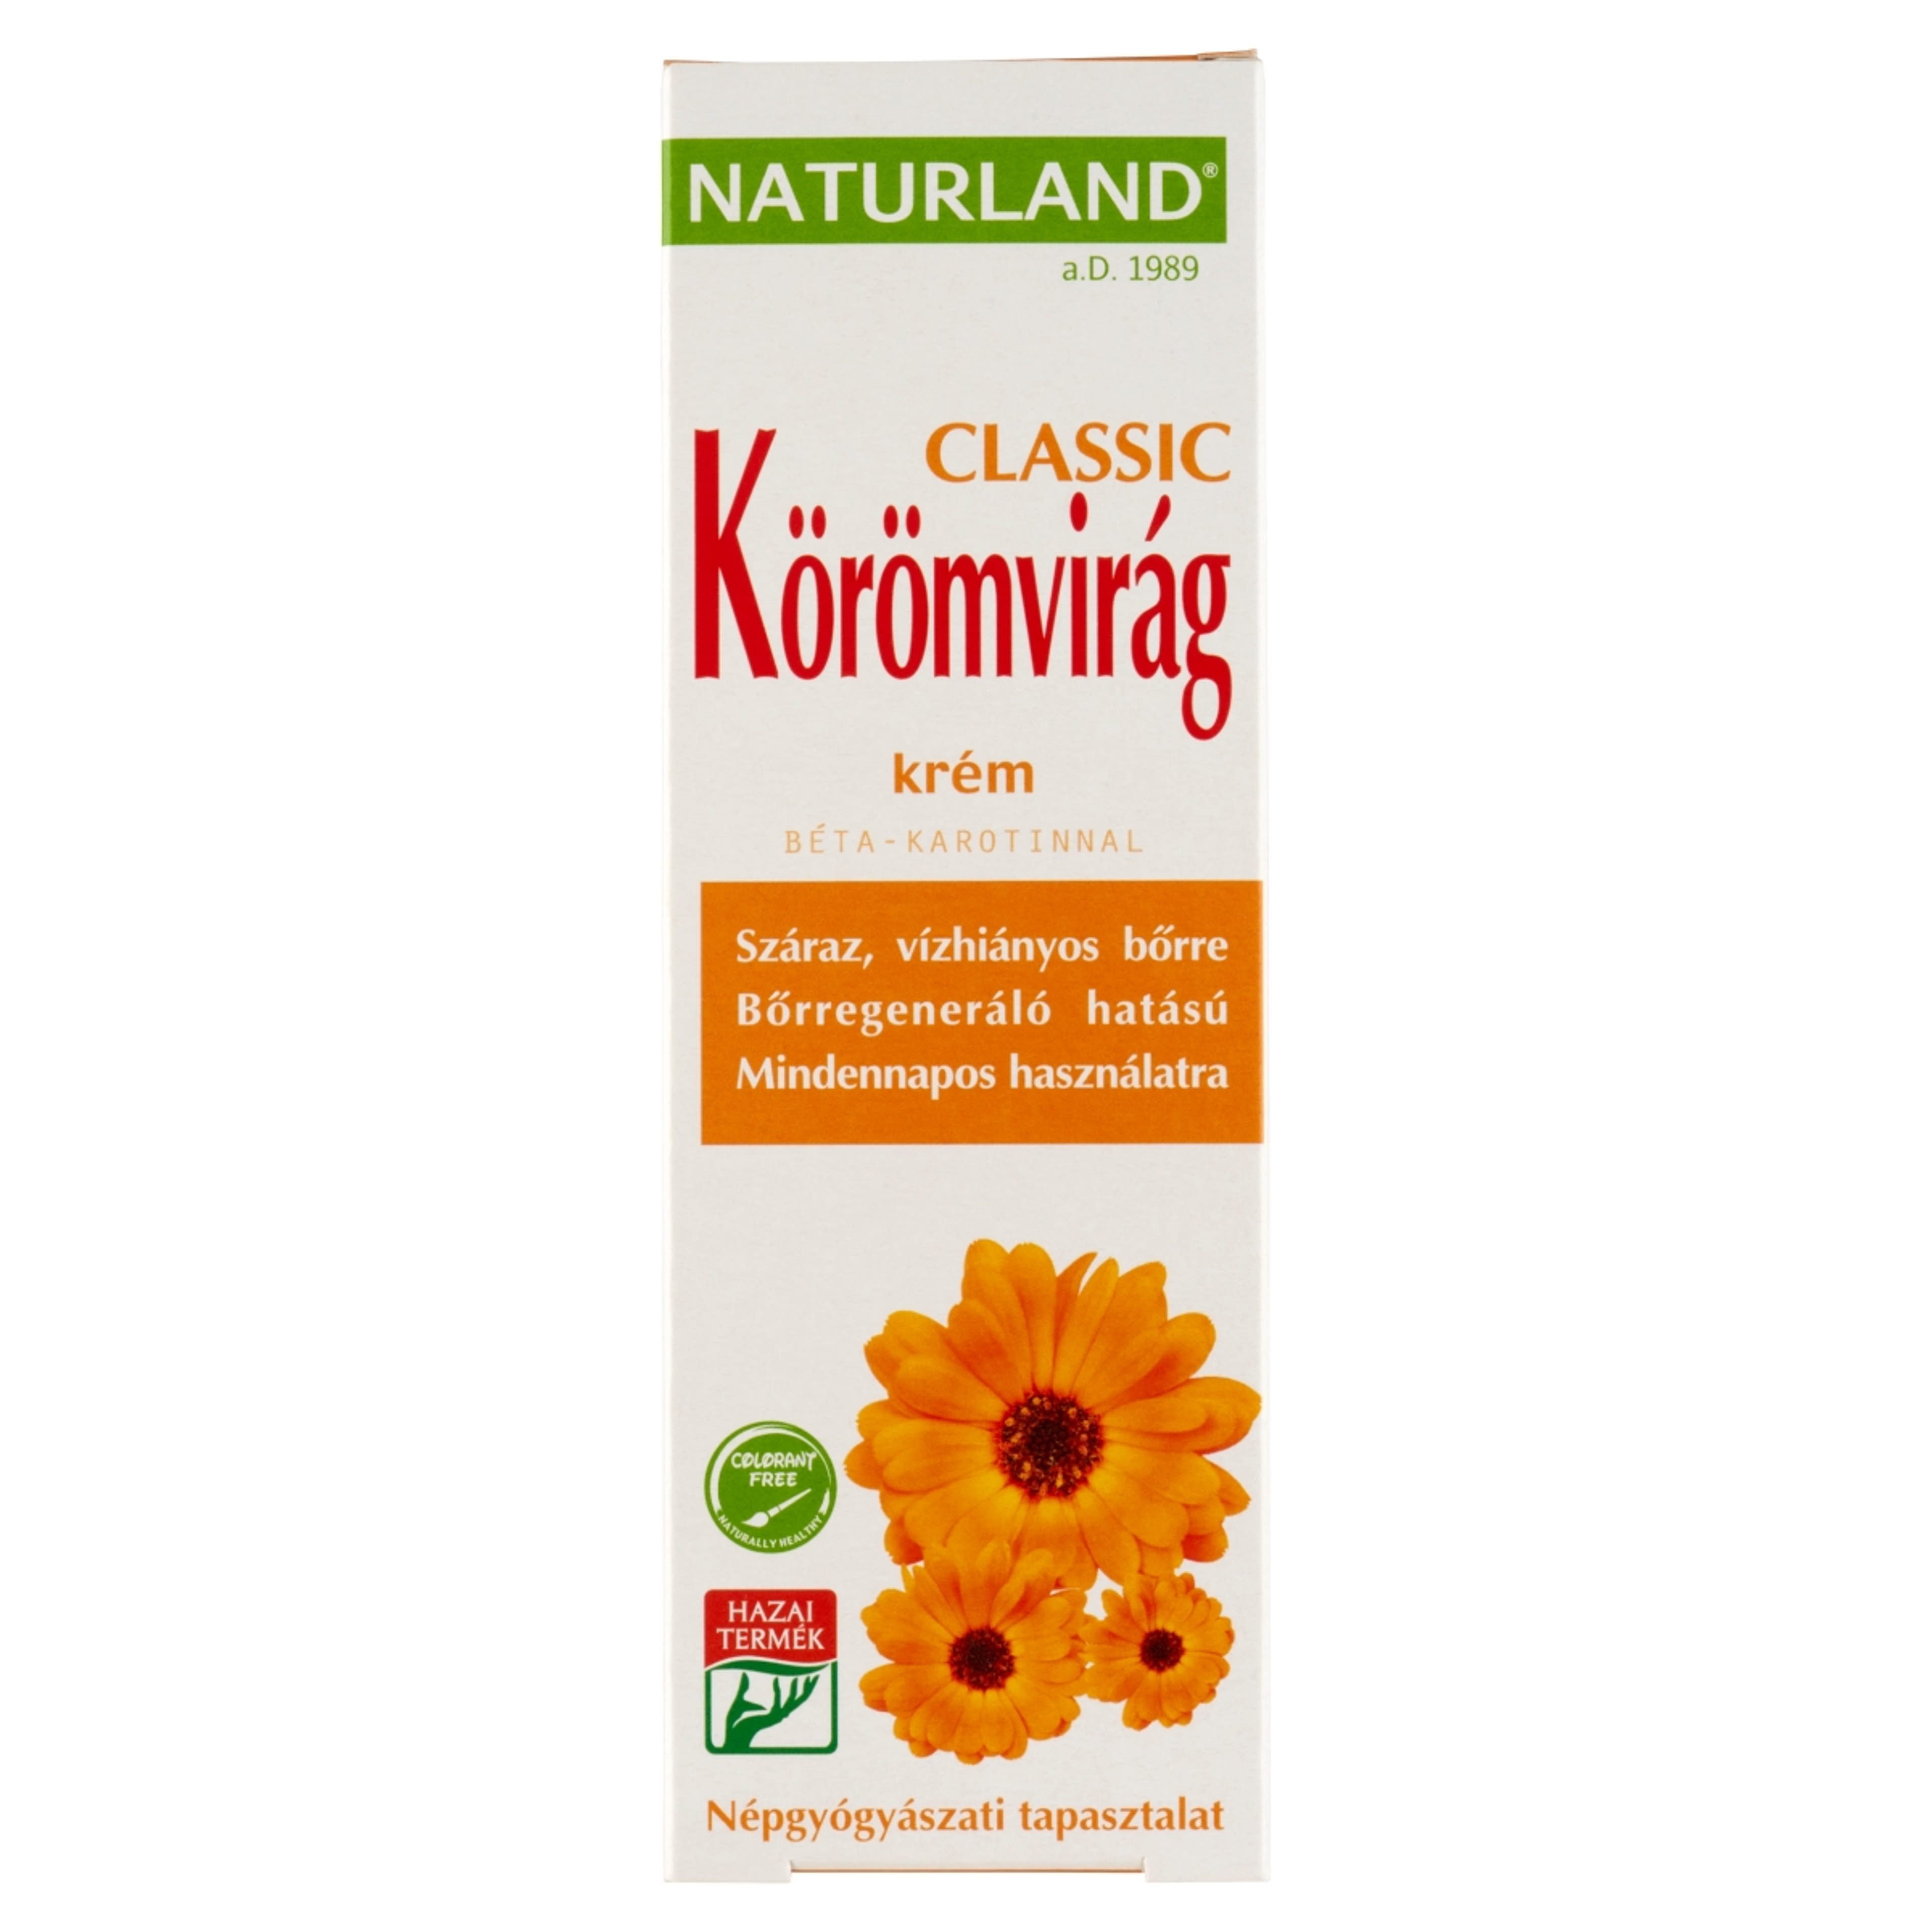 Naturland Classic Körömvirág Krém - 100 ml